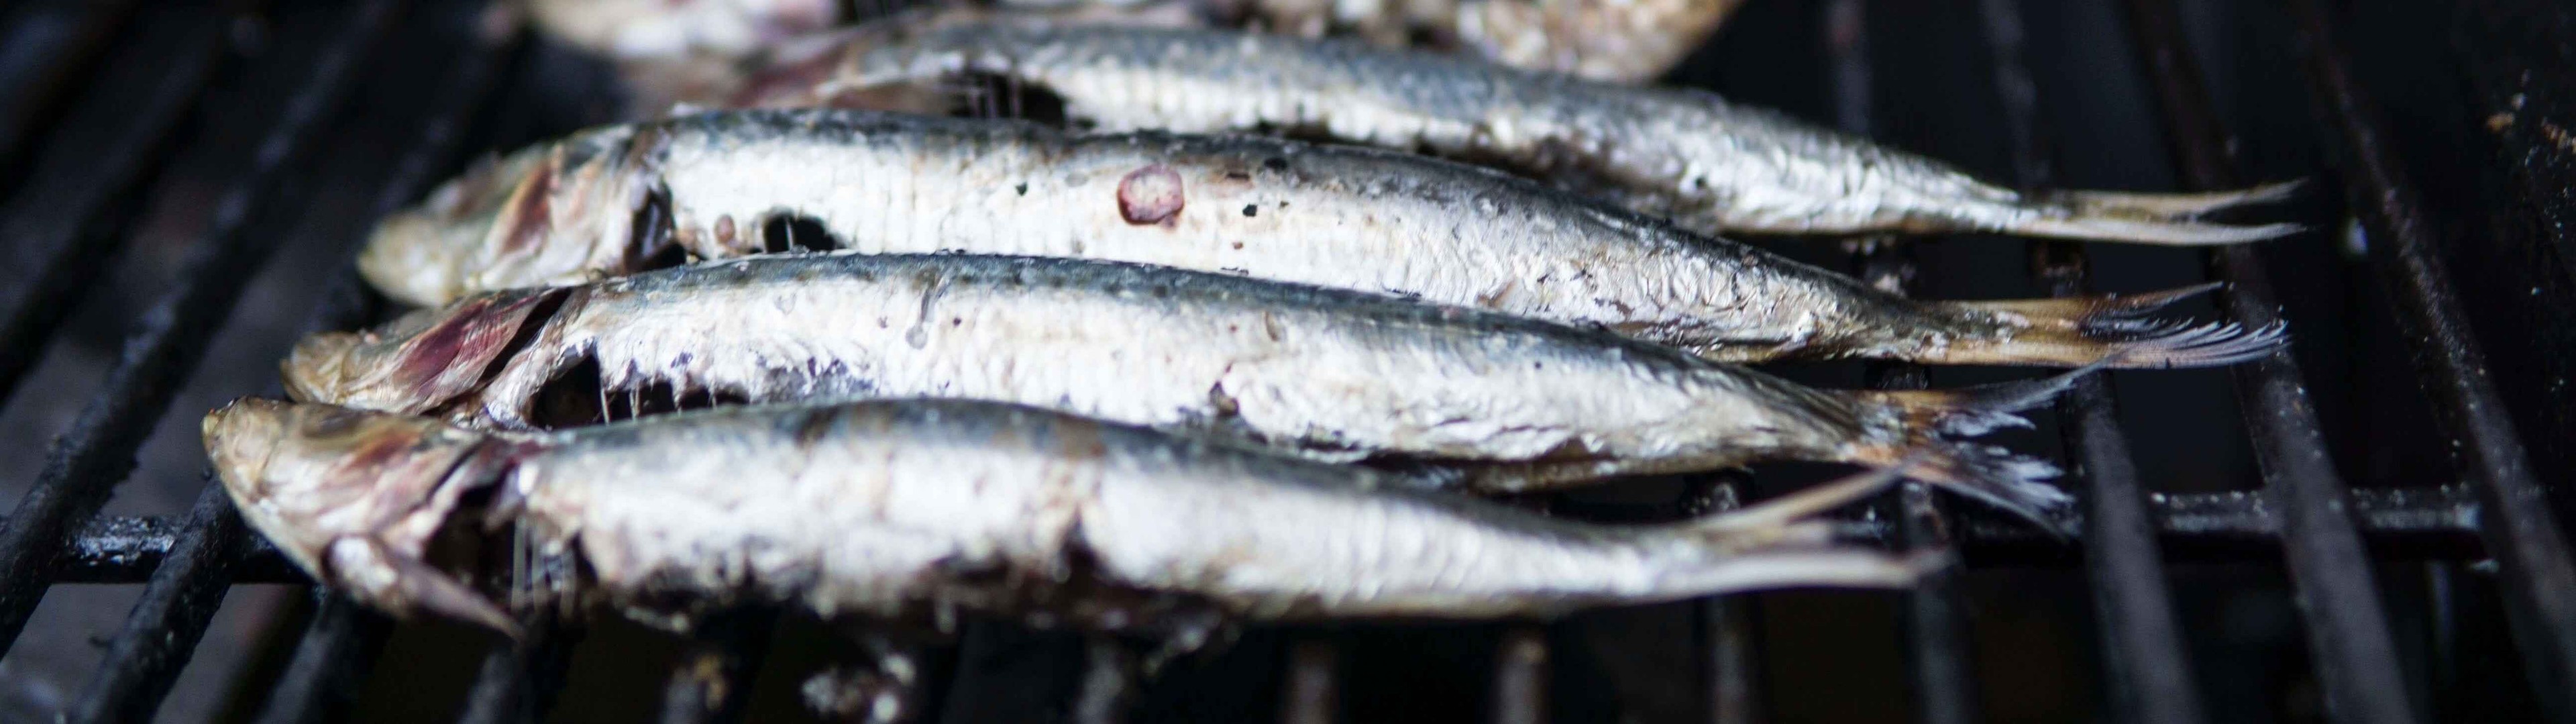 Estos son los pescados más seguros por sus bajos niveles de mercurio 